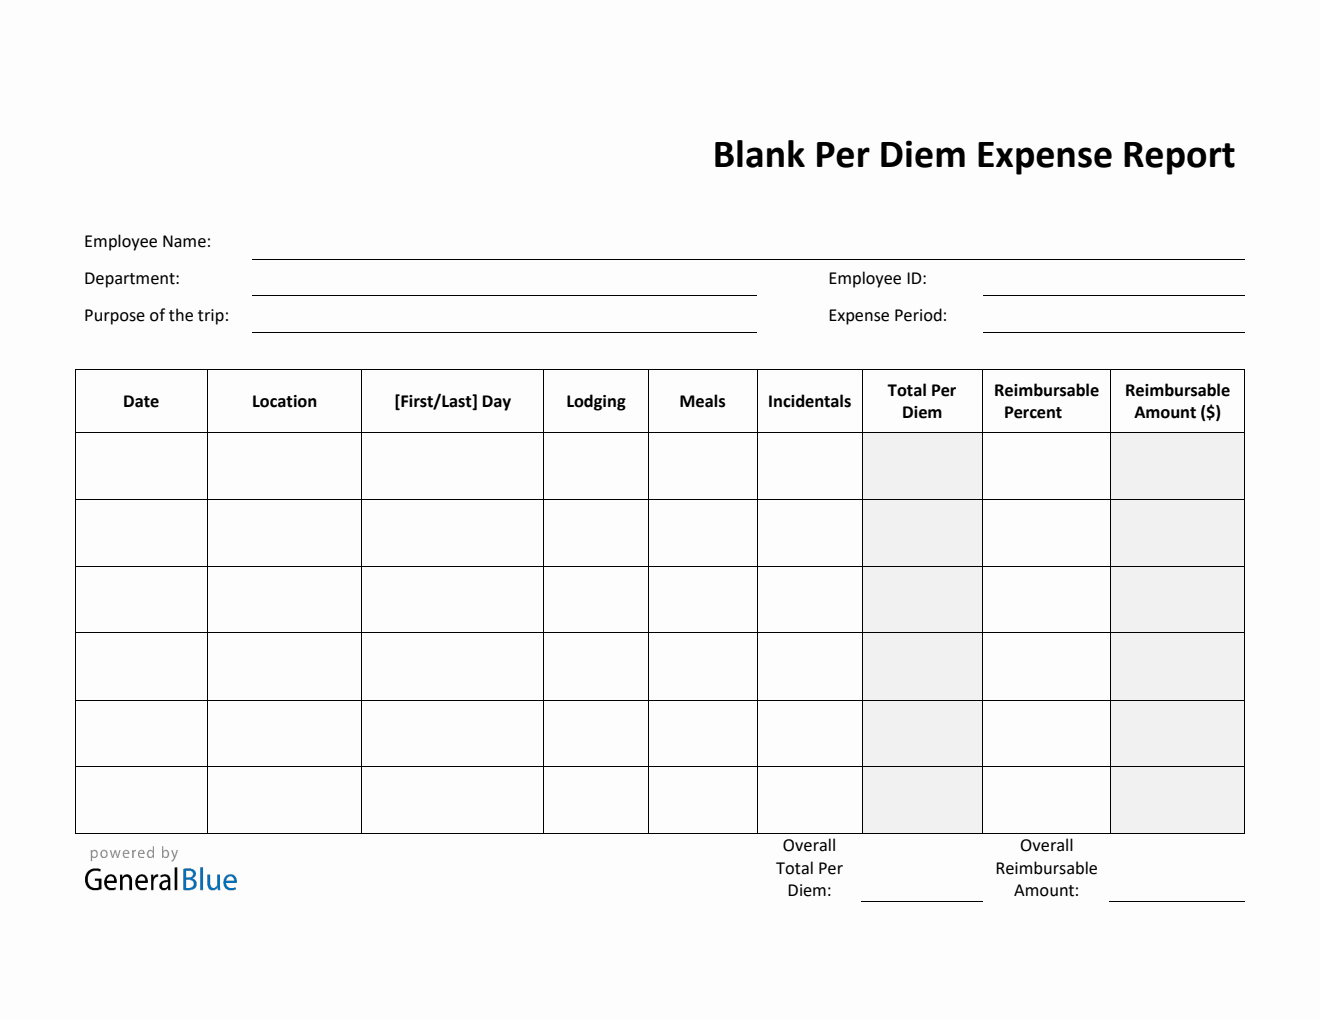 Blank Per Diem Expense Report Template in PDF (Printable)